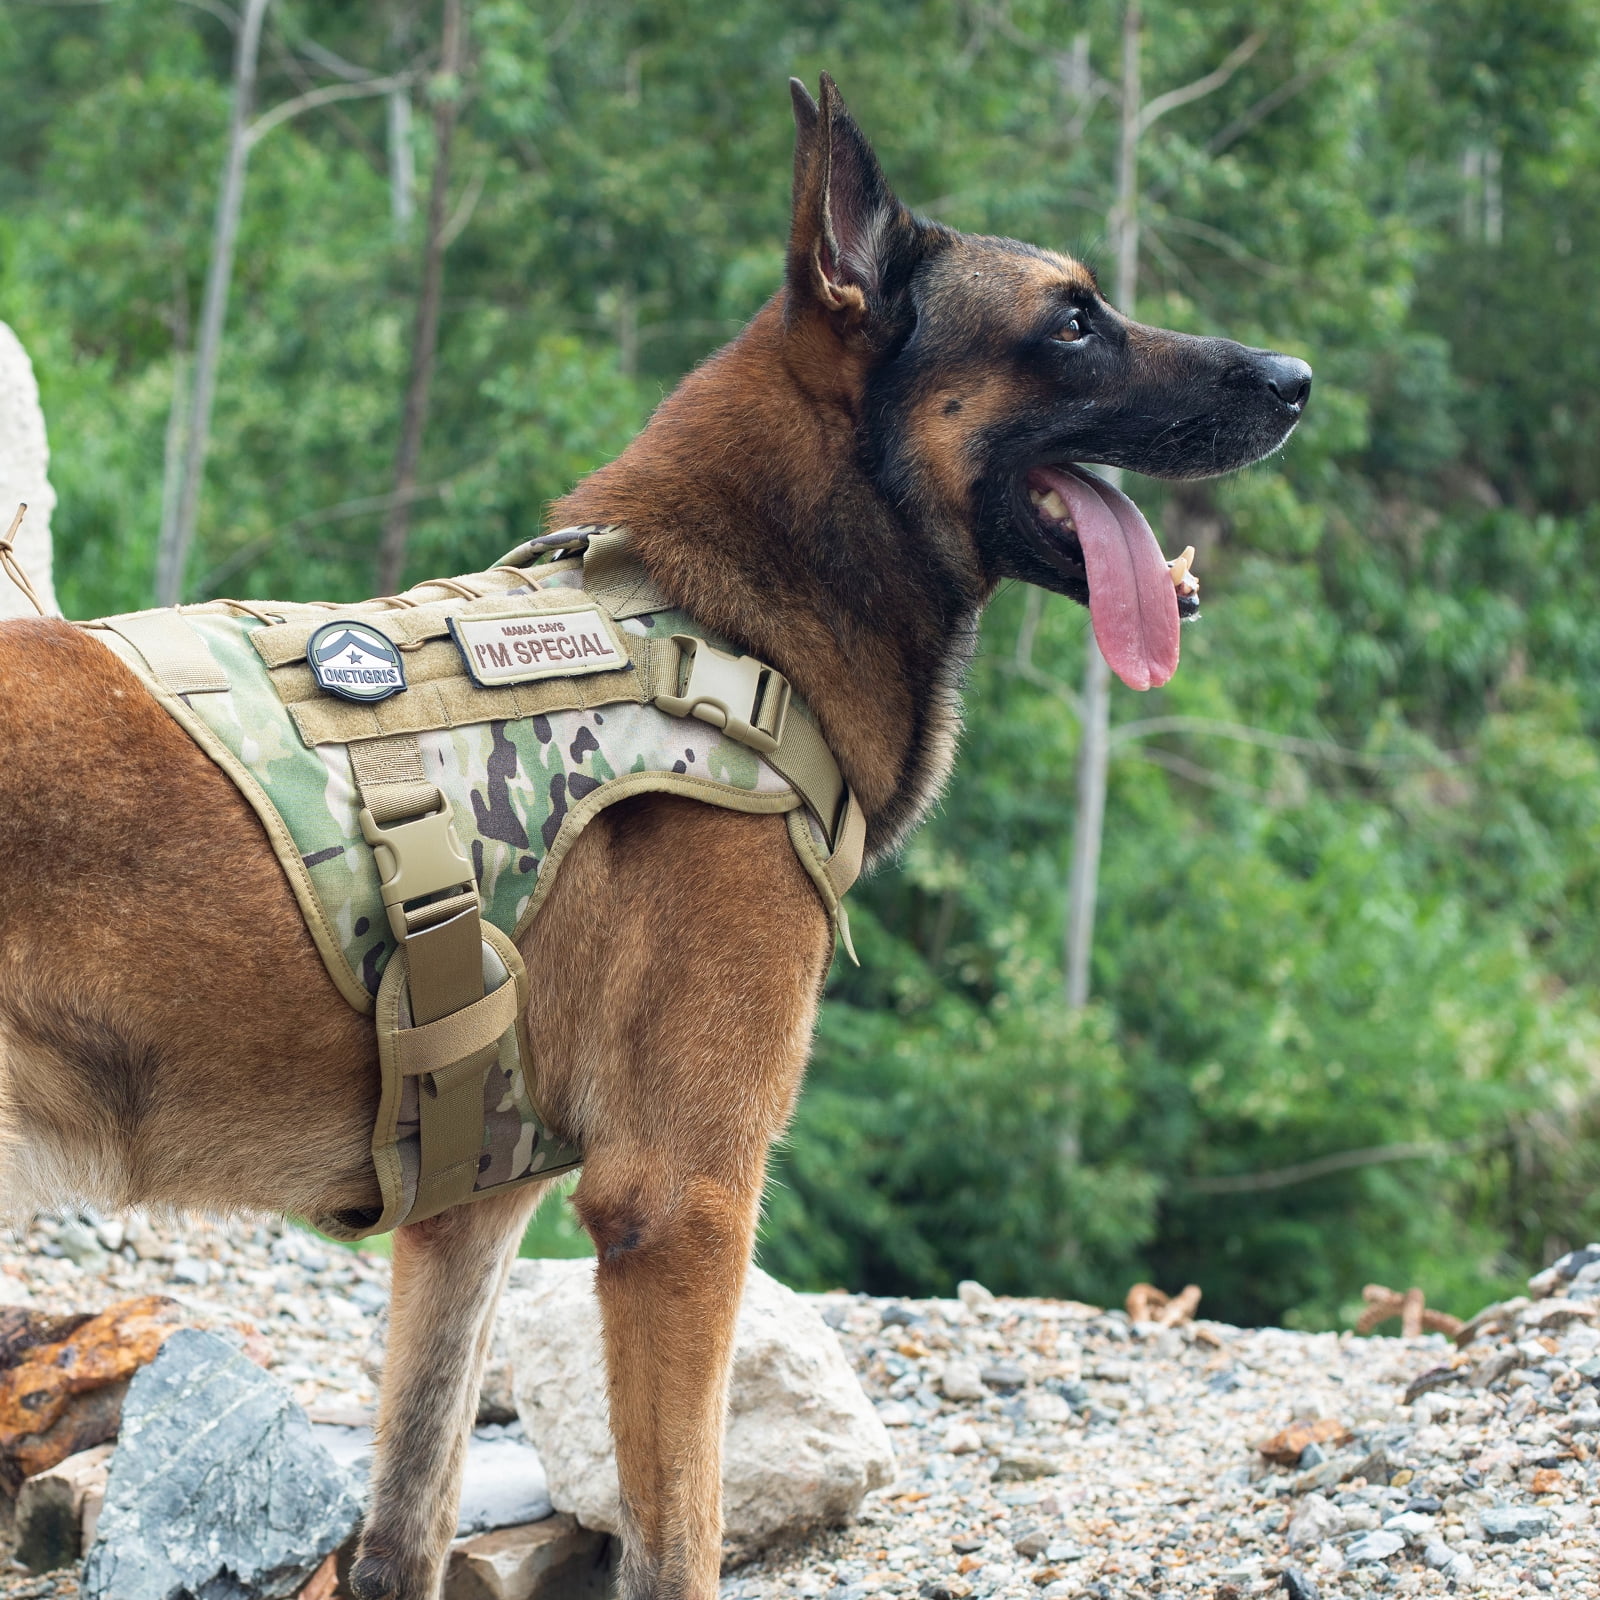 Onetigris No Pull Tactical Dog Harness for Large Dog, Mesh Design Brea –  KOL PET